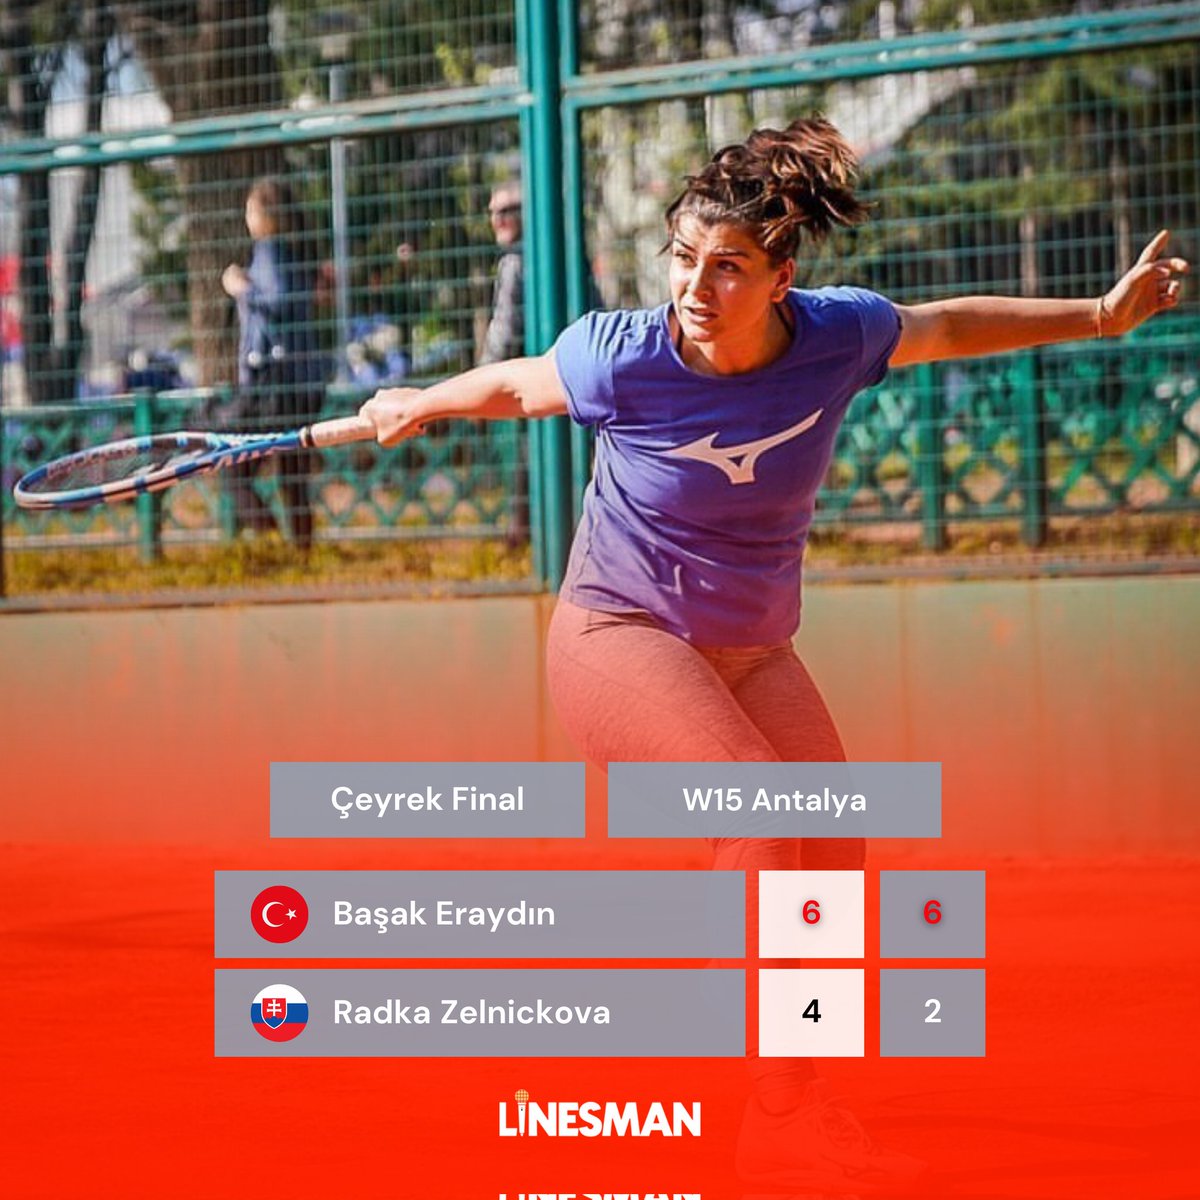 🎾 Milli raketimiz Başak Eraydın (@EraydinBasaK), W15 Antalya turnuvasının çeyrek finalinde Radka Zelnickova’yı 6-4, 6-2 mağlup ederek yarı finale yükseldi! #TürkTenisi • #BaşakEraydın